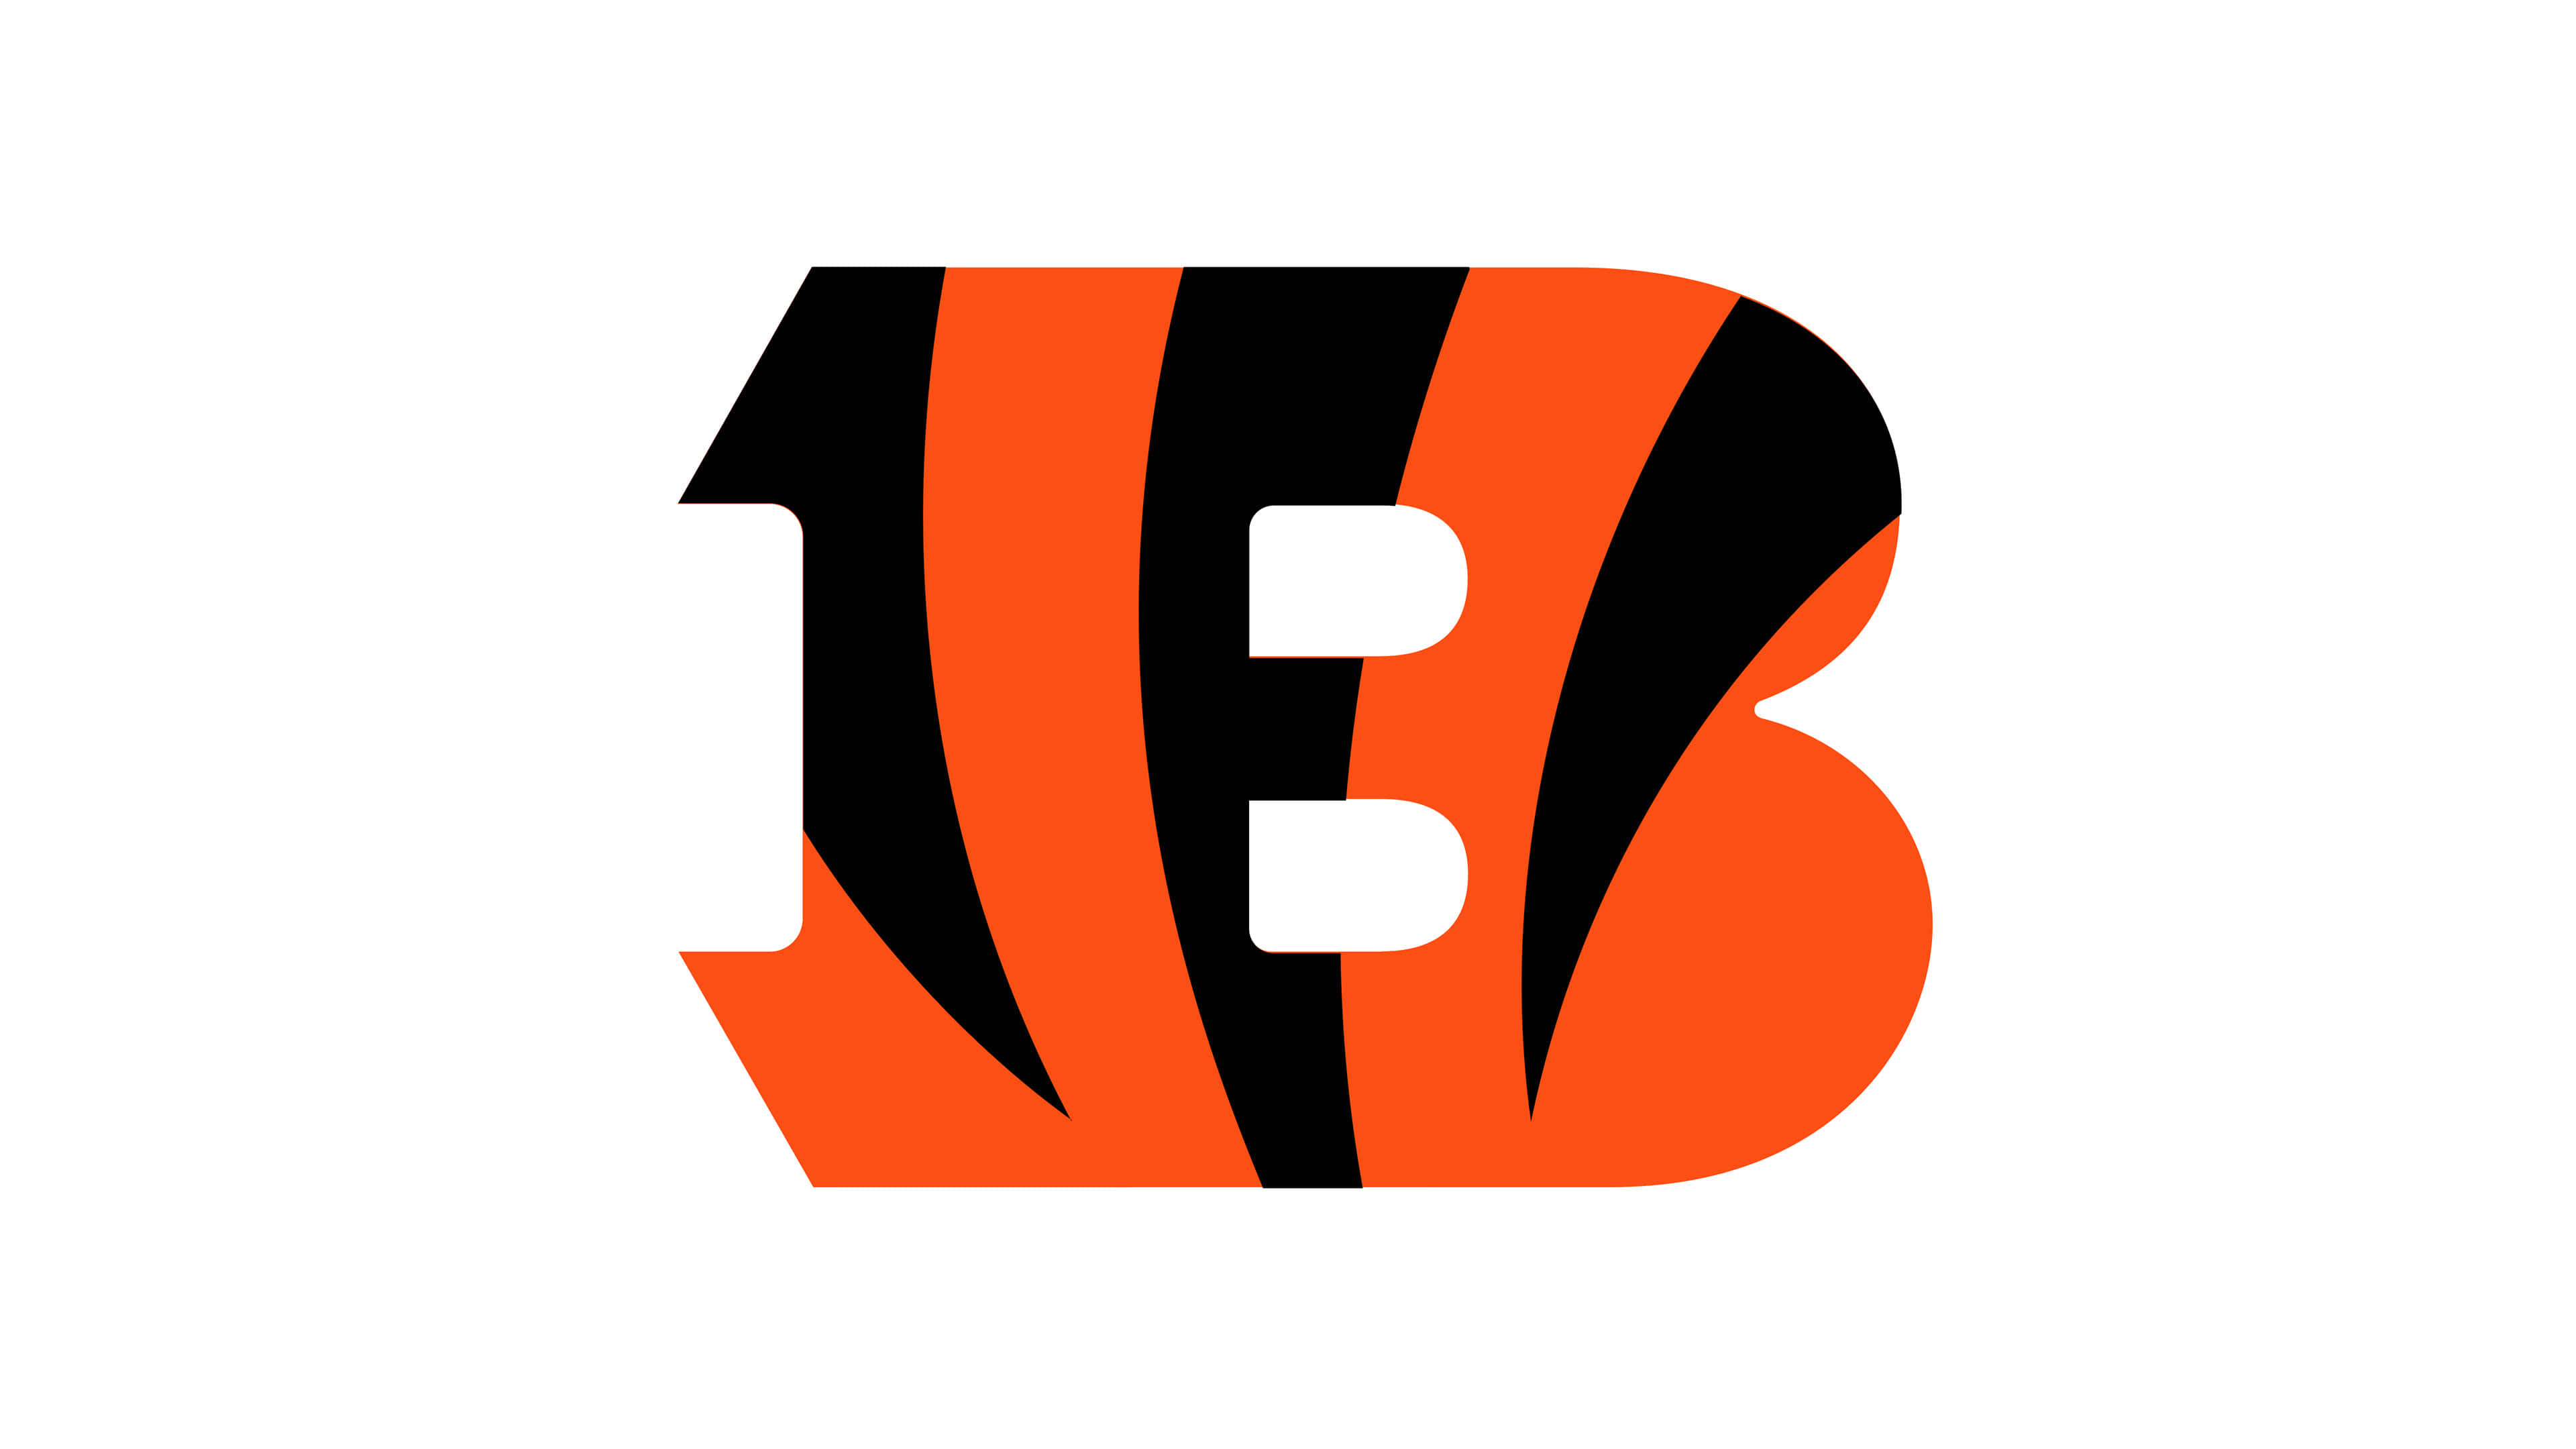 Cincinnati Bengals, NFL logo, UHD 4K wallpaper, Team representation, 3840x2160 4K Desktop